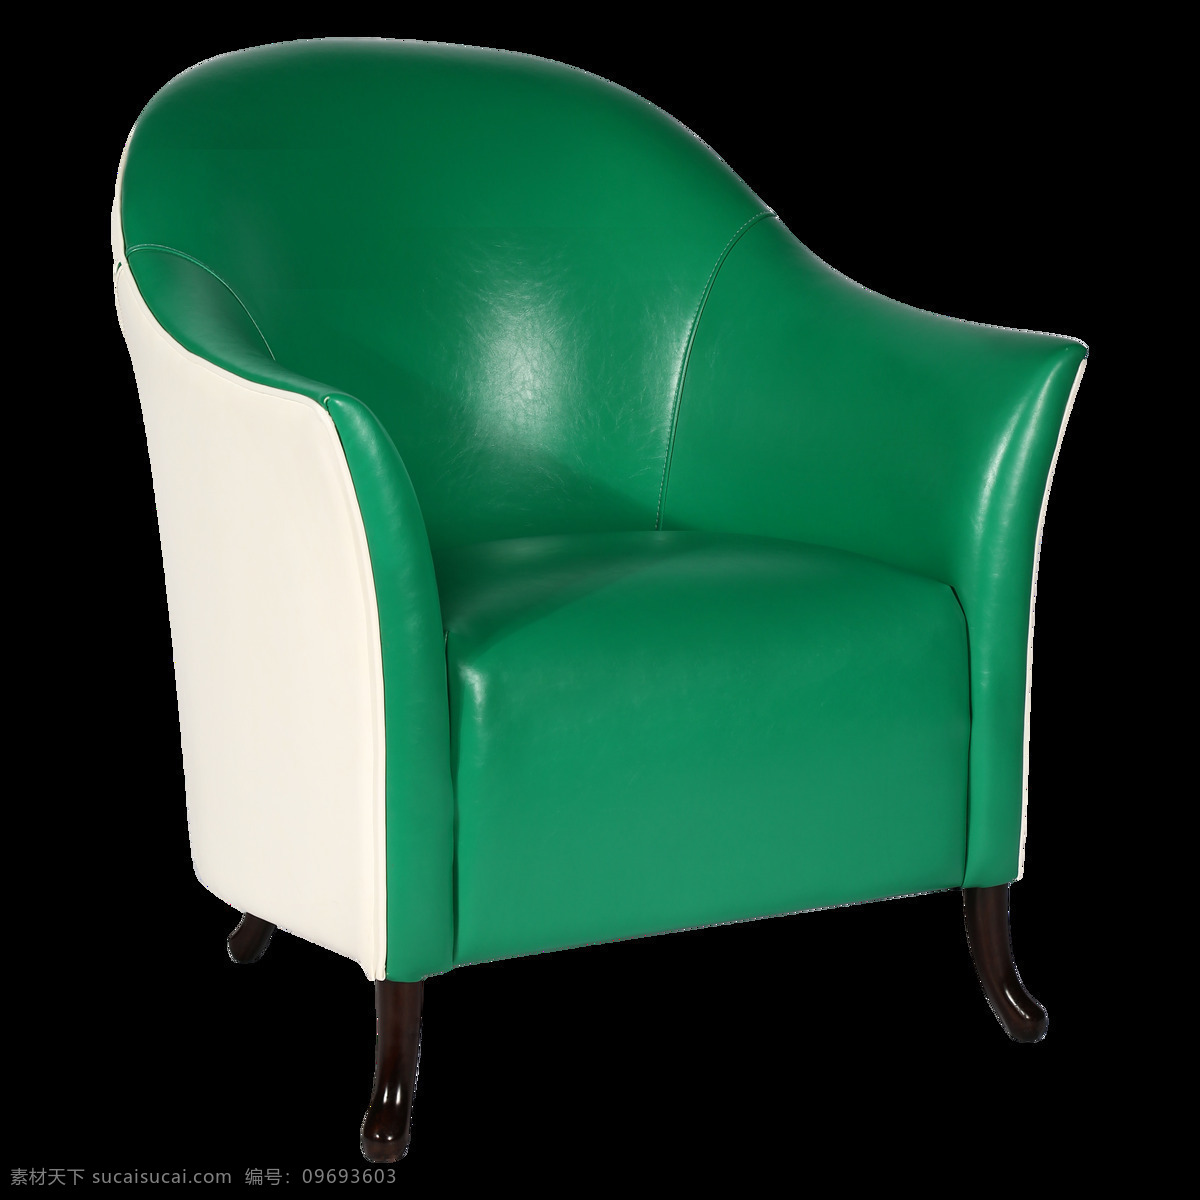 可椅高级定制 绿色 糖果 色 洽谈 椅 休闲椅 椅子 沙发 高级定制 简约 北欧 哥特 自然 地中海 现代 新中式 家具 家居